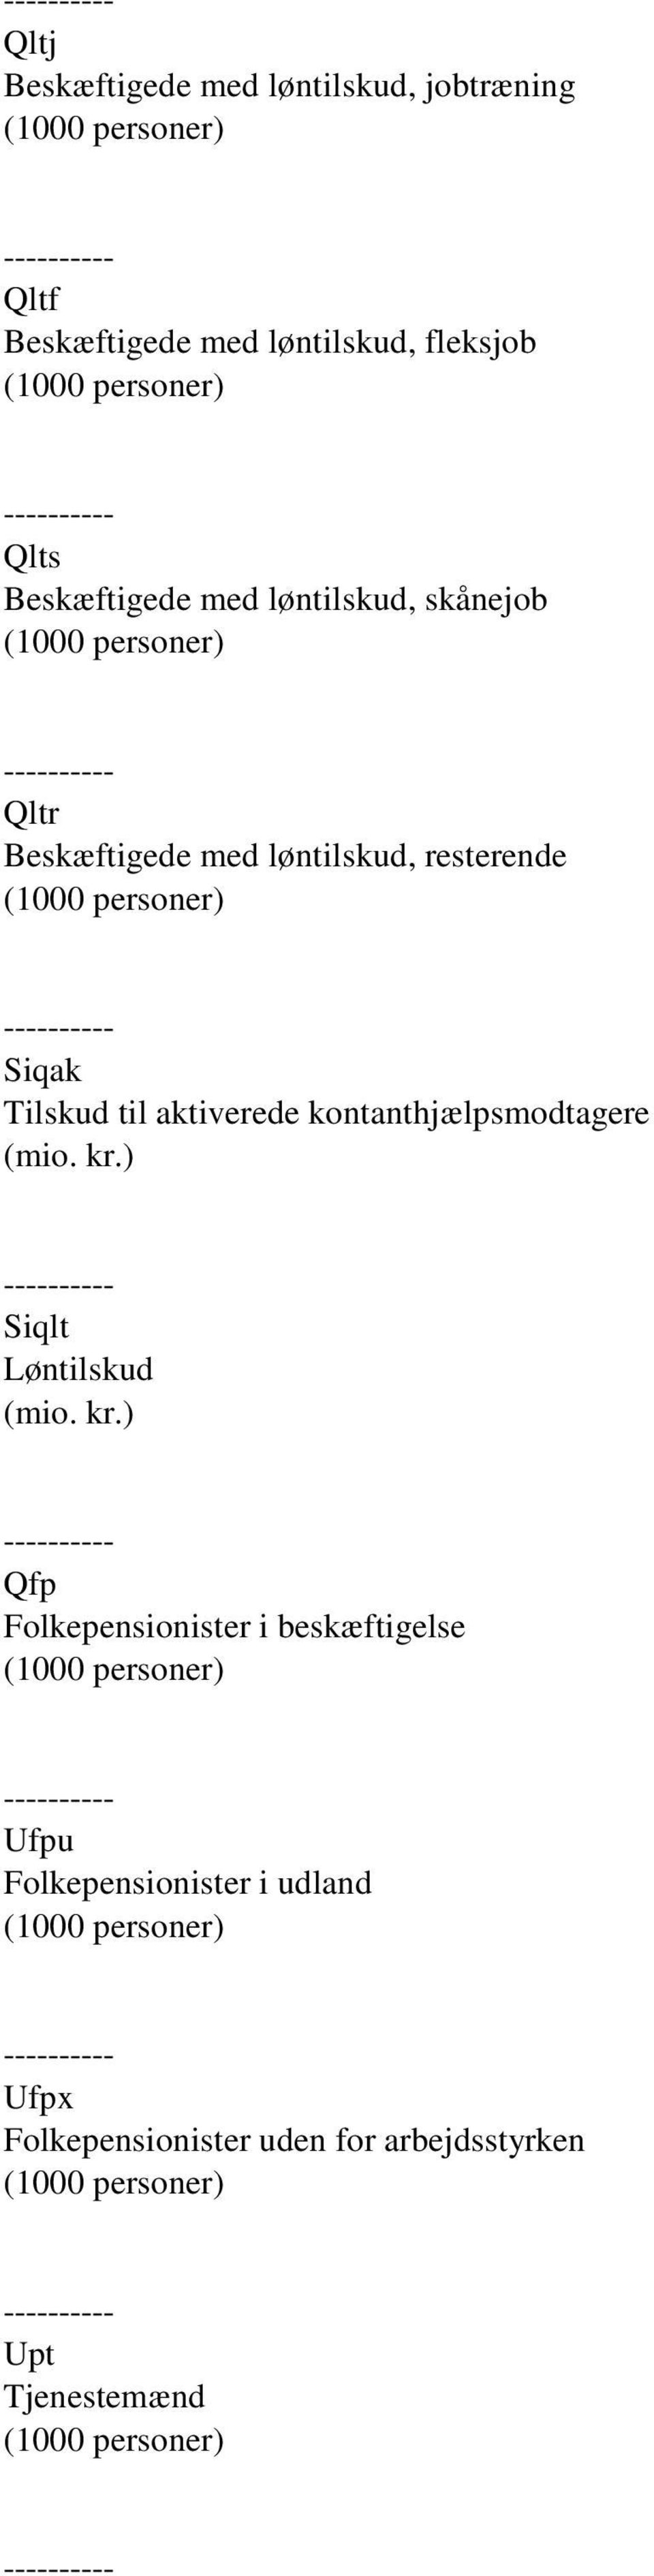 Tilskud til aktiverede kontanthjælpsmodtagere Siqlt Løntilskud Qfp Folkepensionister i beskæftigelse (1000 personer) Ufpu